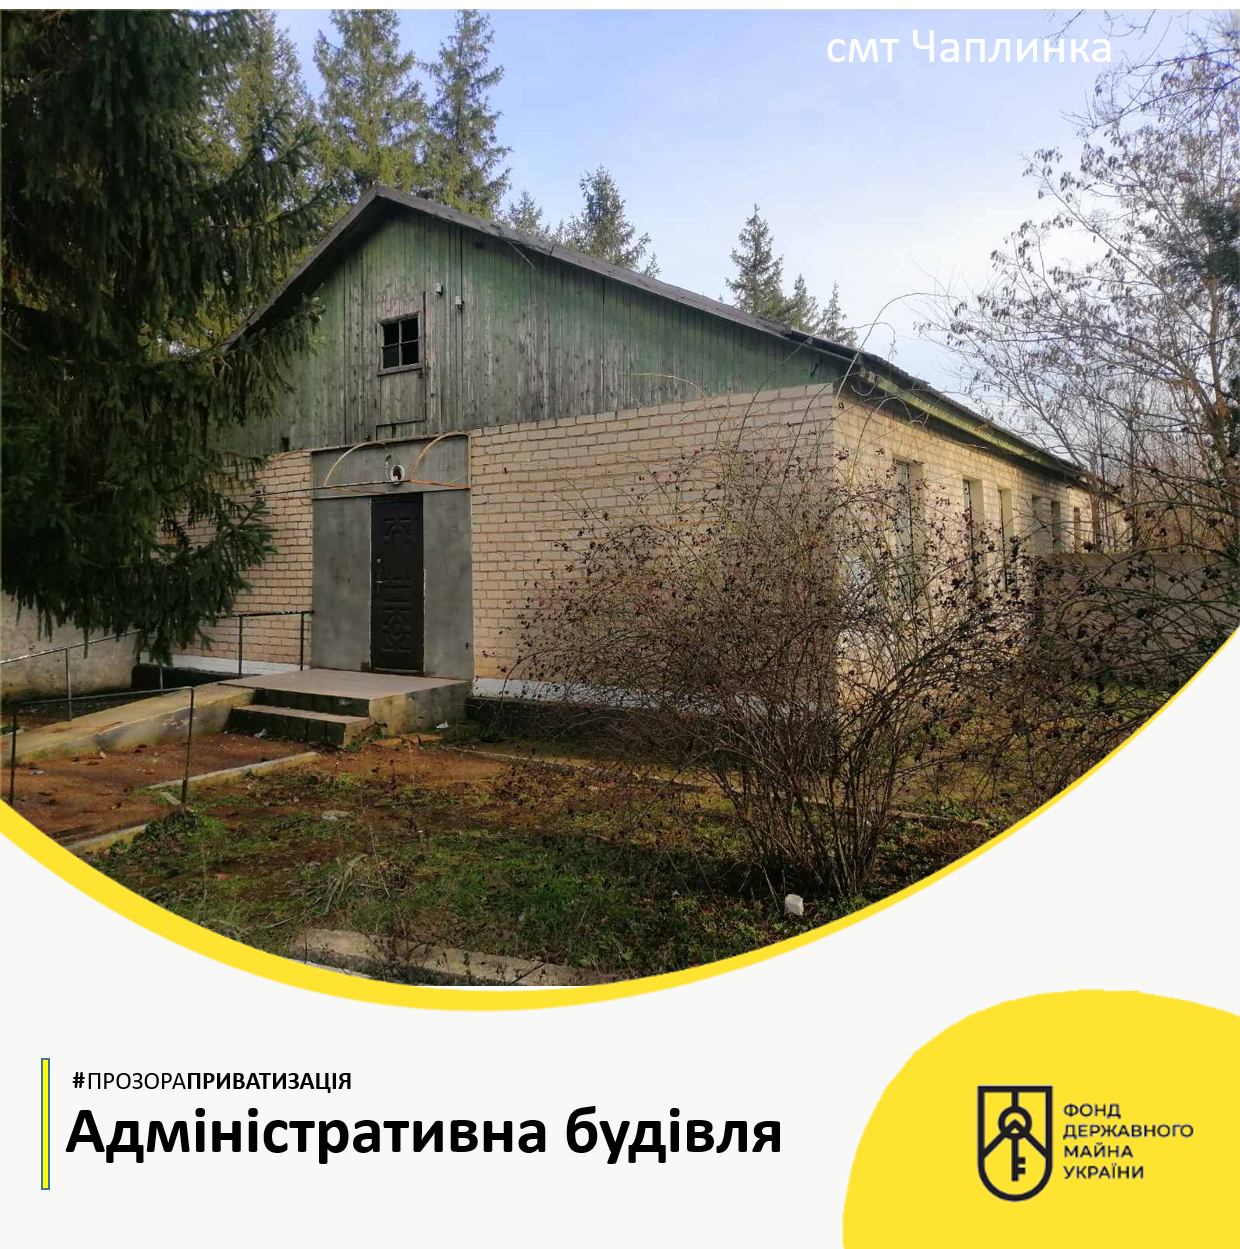 У смт Чаплинка Херсонської області на онлайн-аукціоні адміністративна будівля площею 455,5 м²